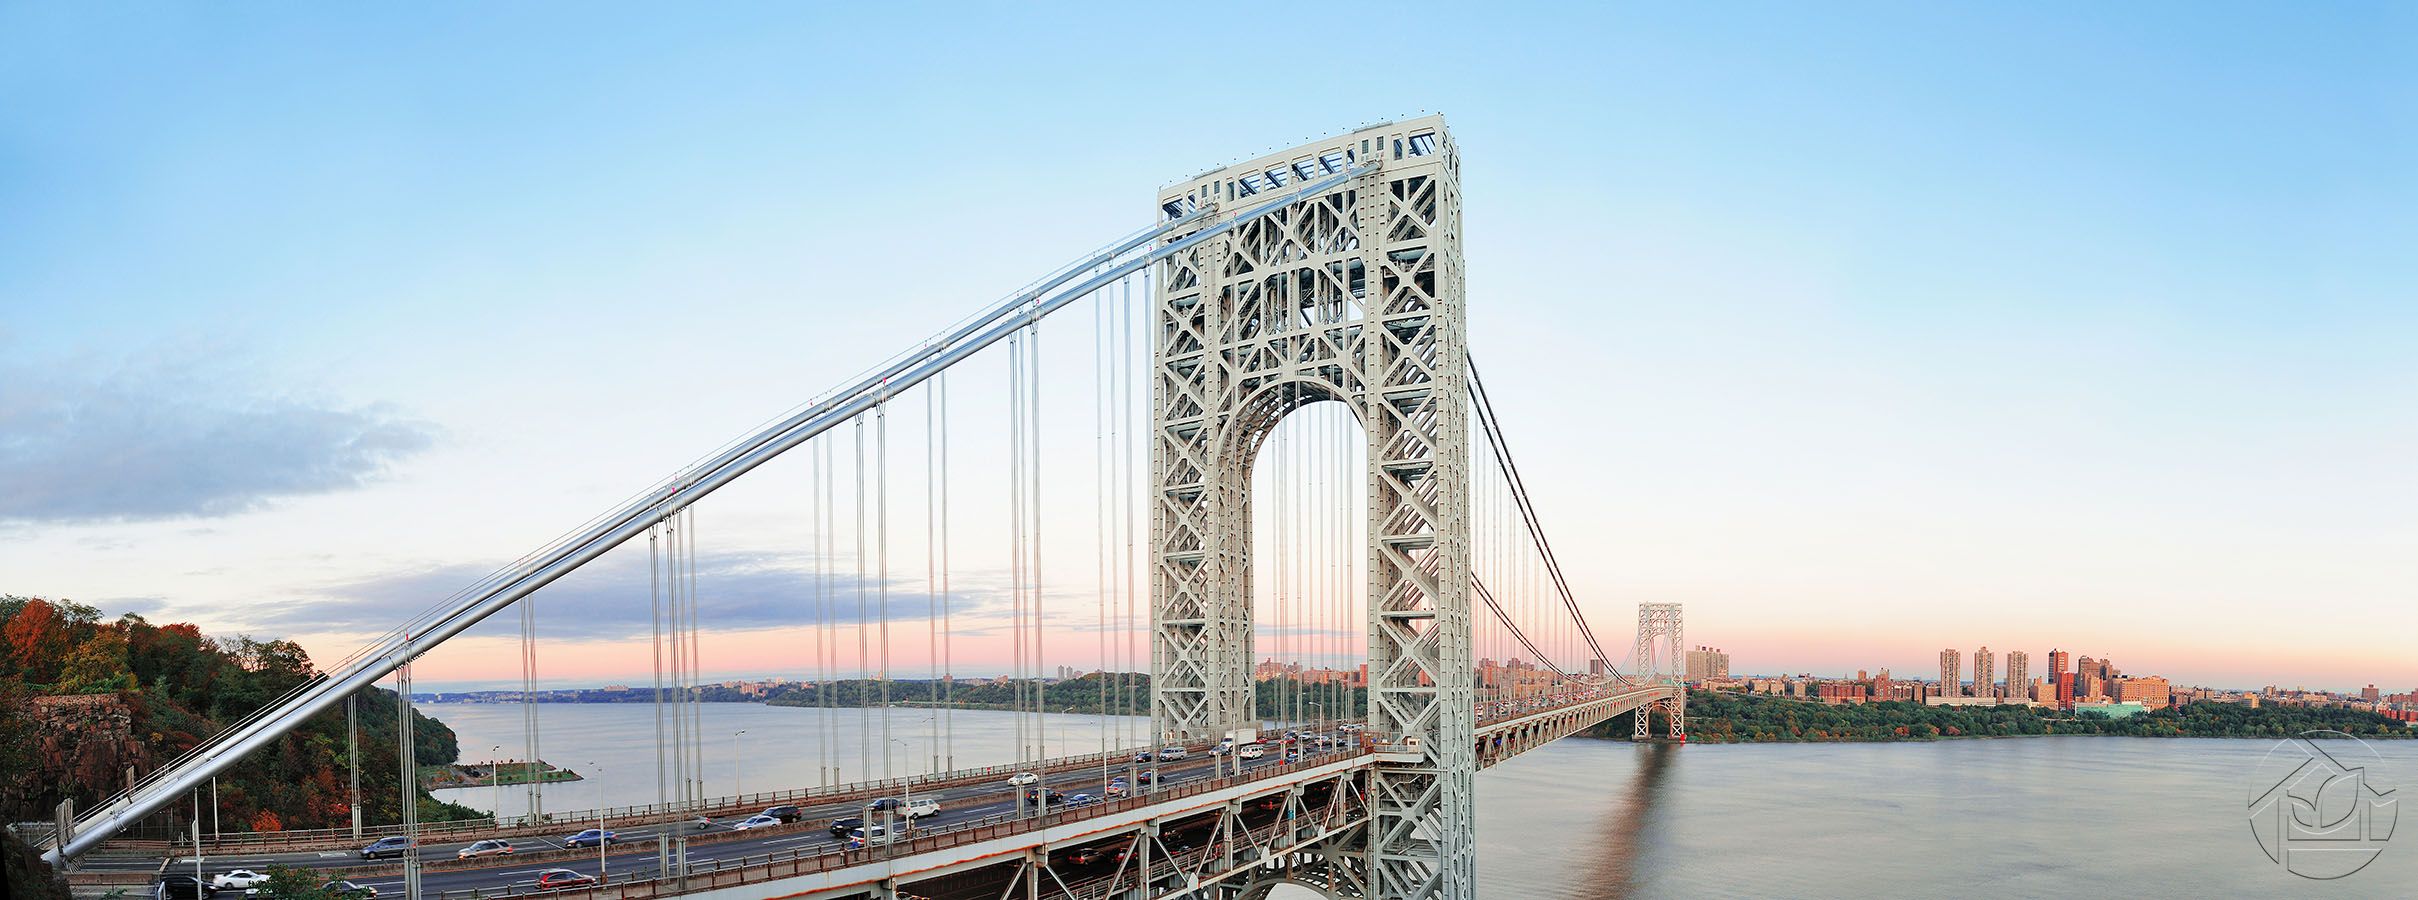 Мост Джорджа Вашингтона — мост в США